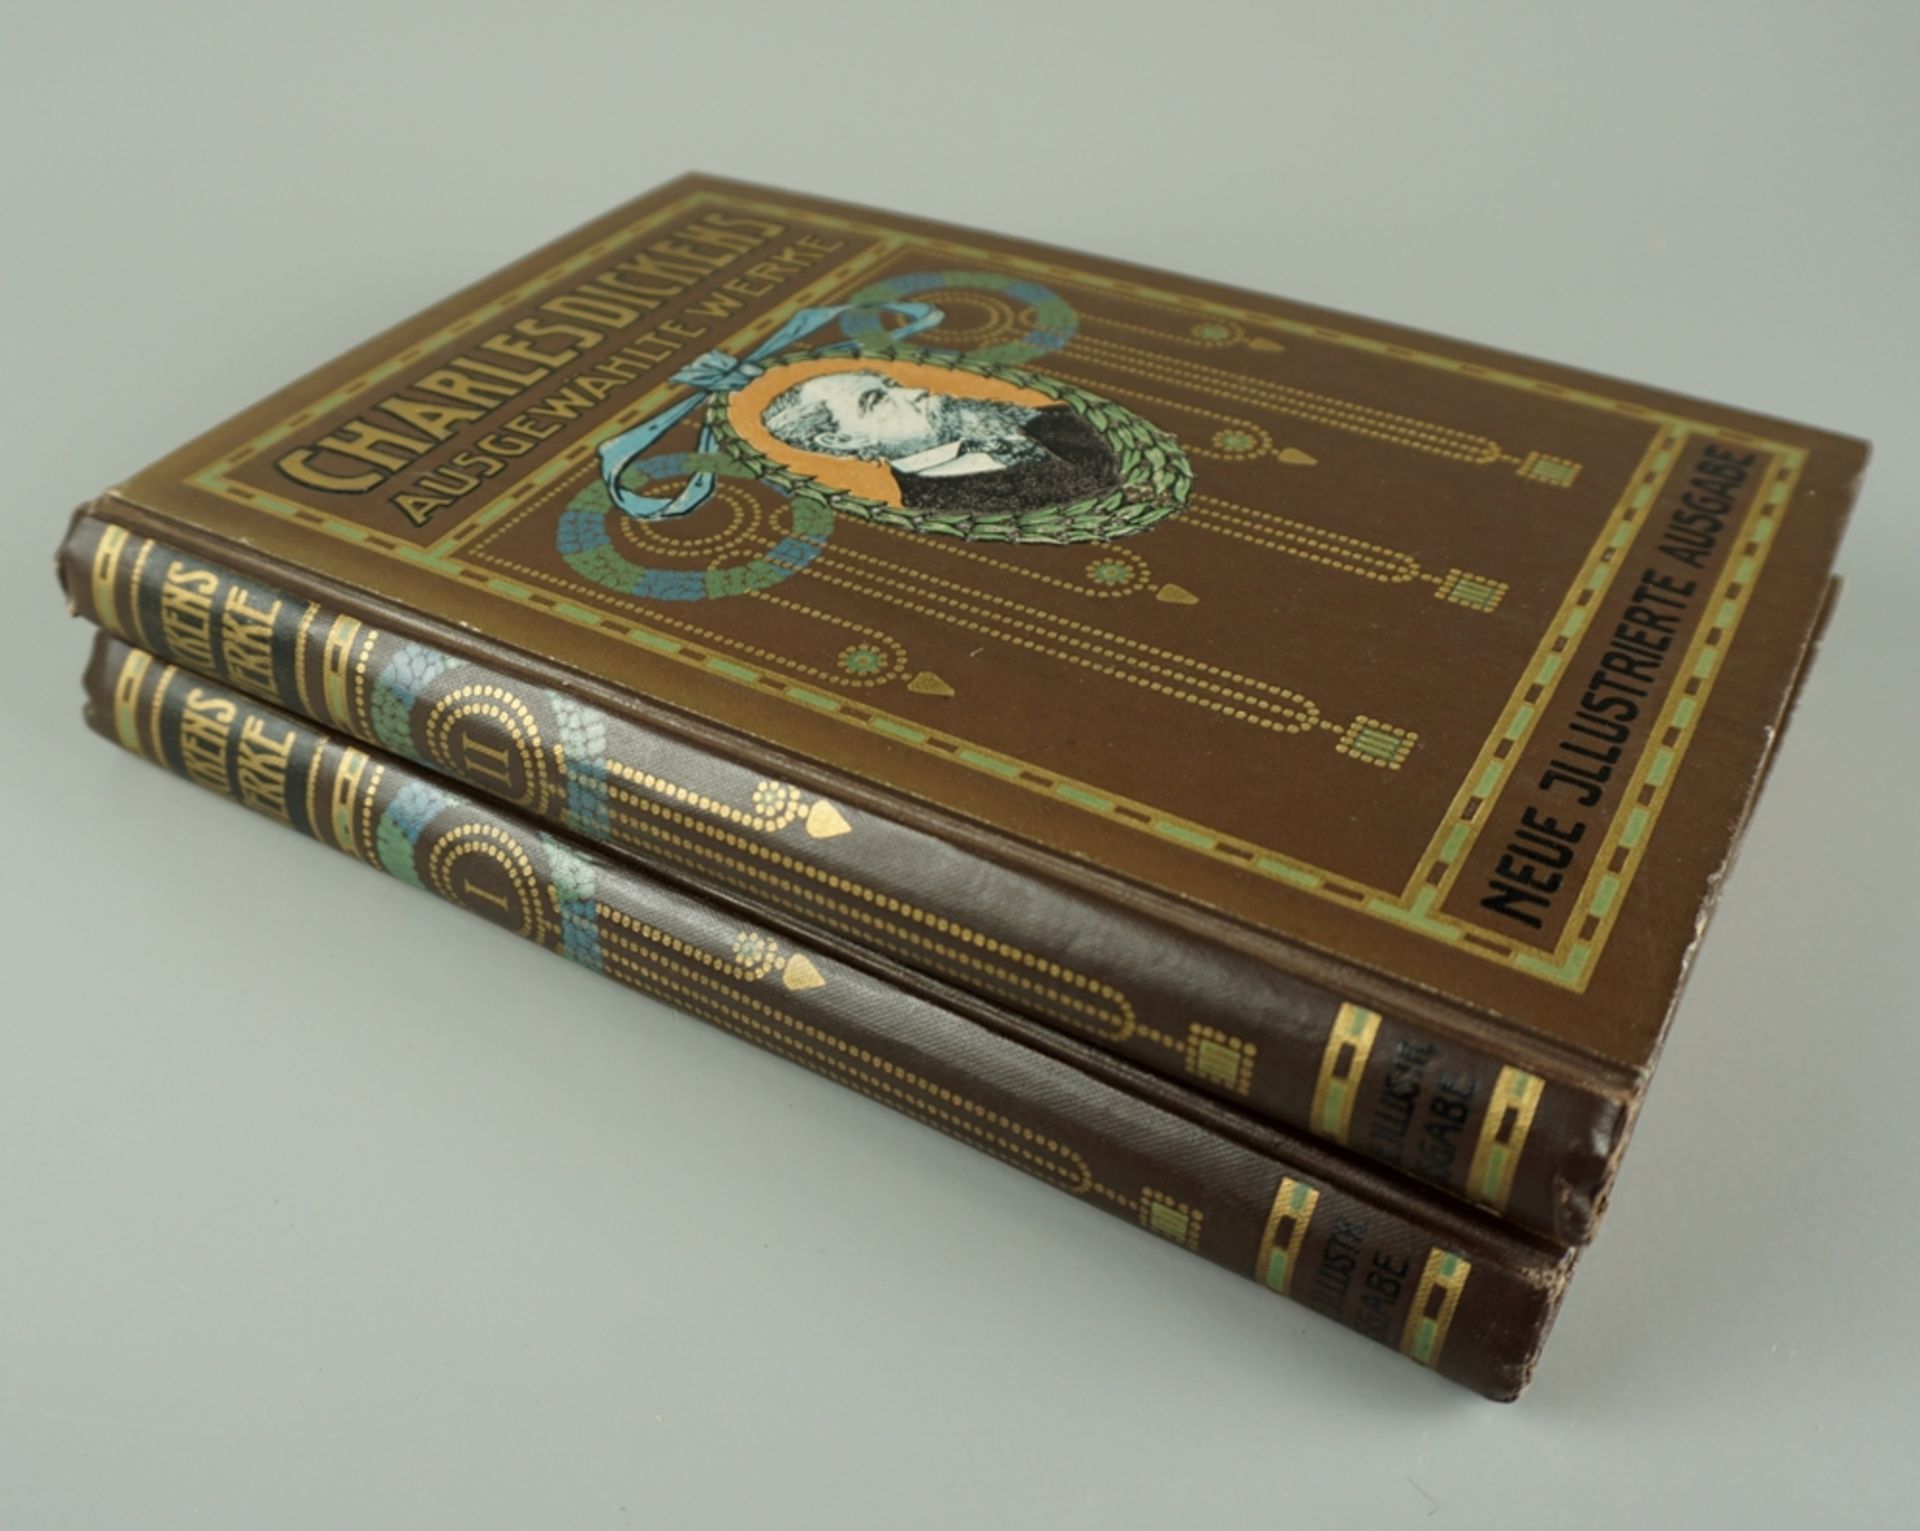 Charles Dickens ausgewählte Werke, Neue illustrierte Ausgabe in 2 Bänden, um 1900 (o.Jz.)